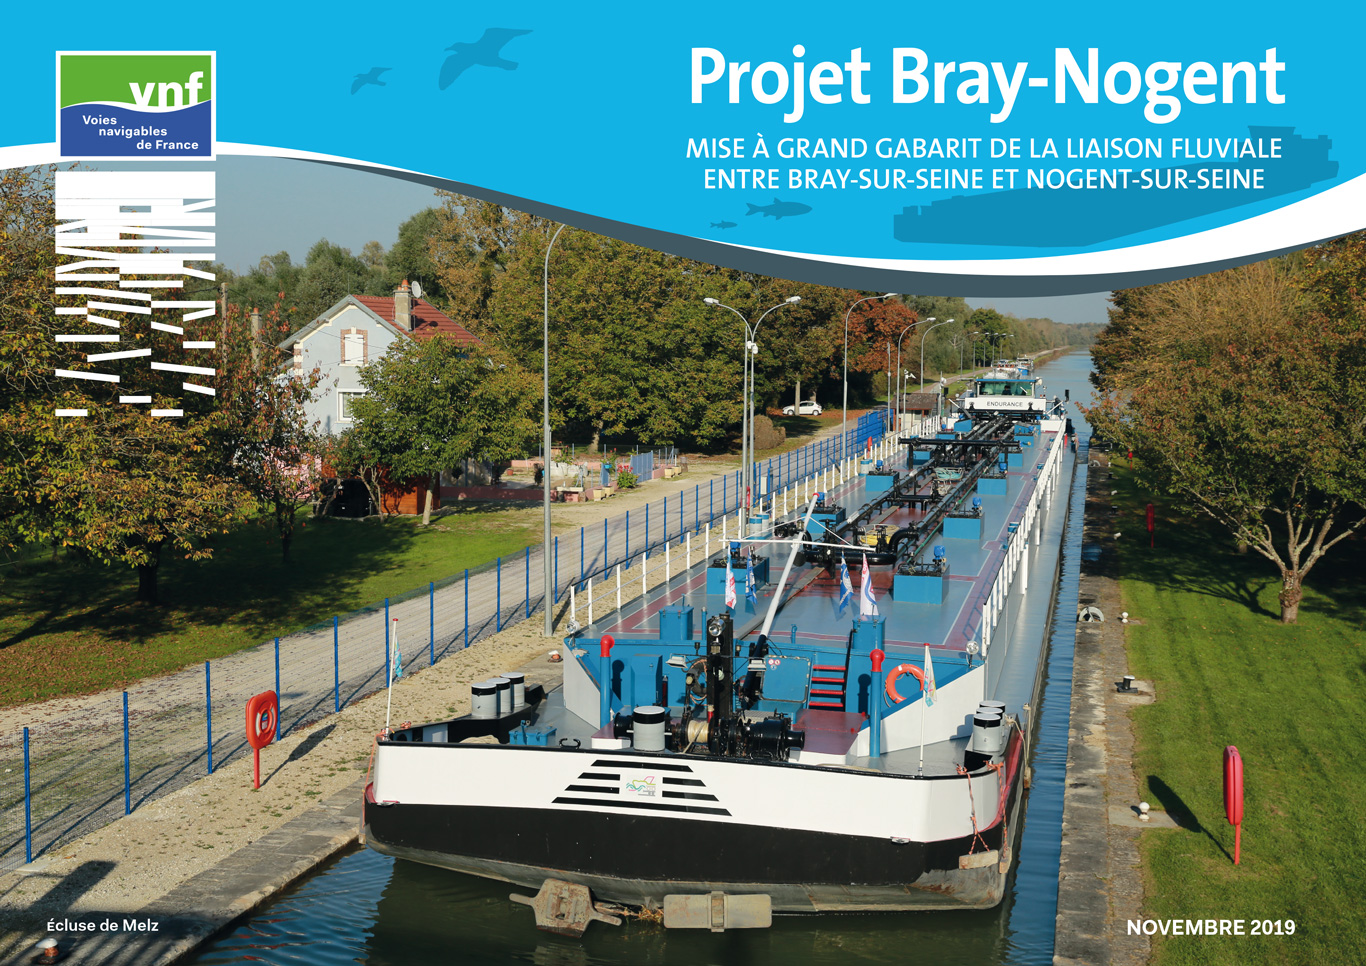 VNF-Bray-Nogent-Plaquette-2019-1